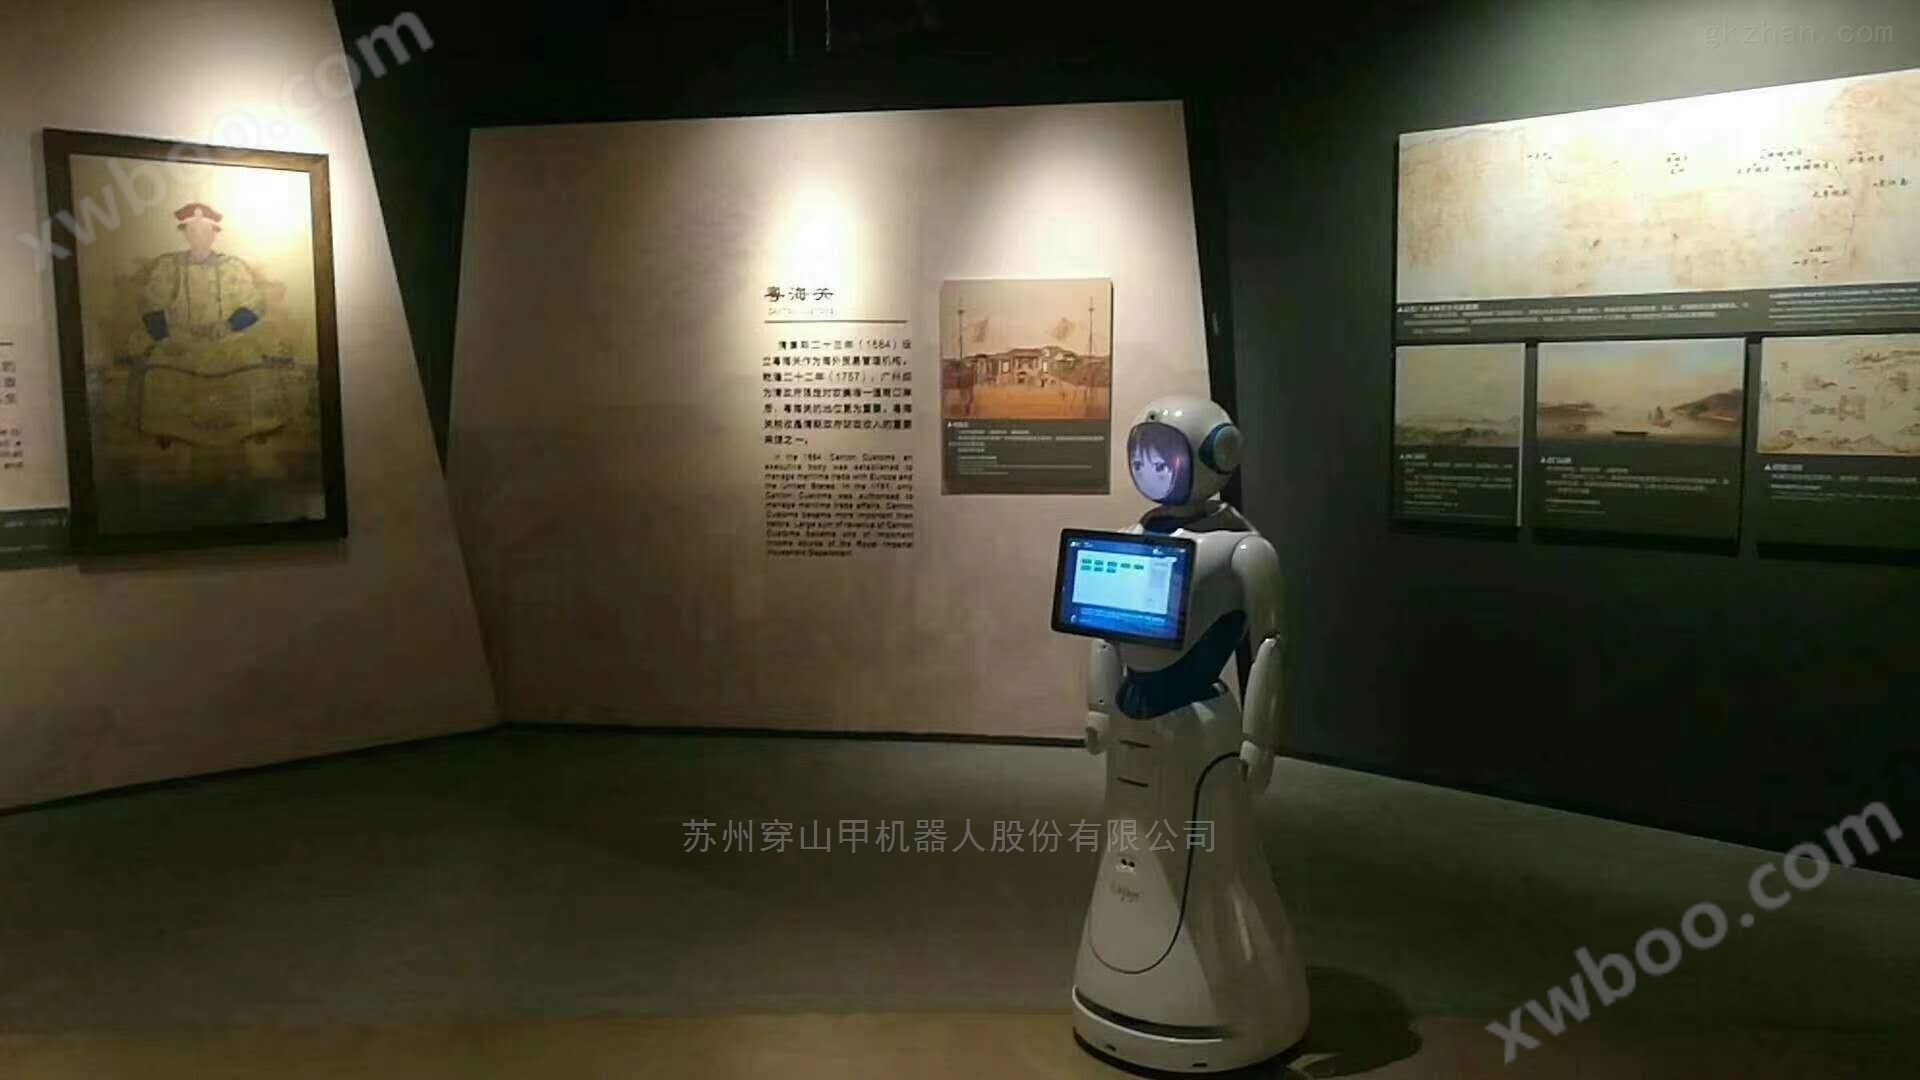 哈尔滨铁路史博物馆迎宾产品营销服务机器人